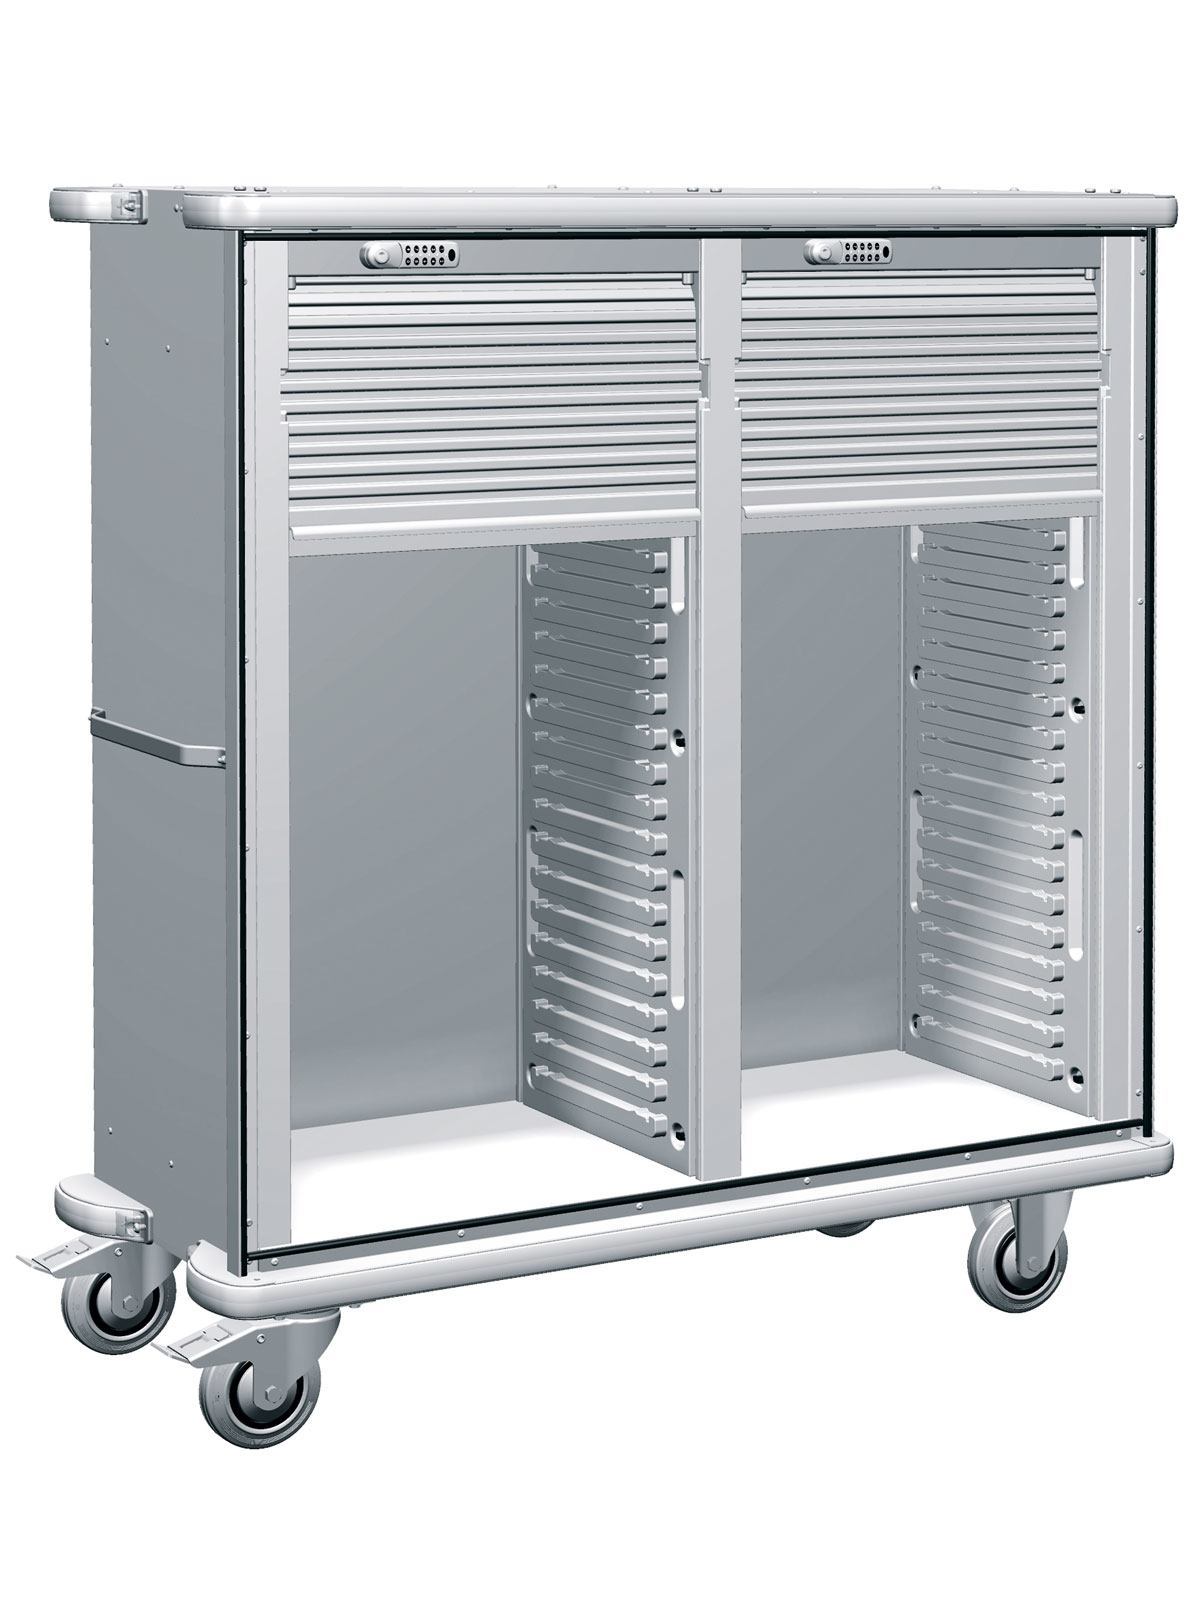 W105 Storage cart SKU 373791